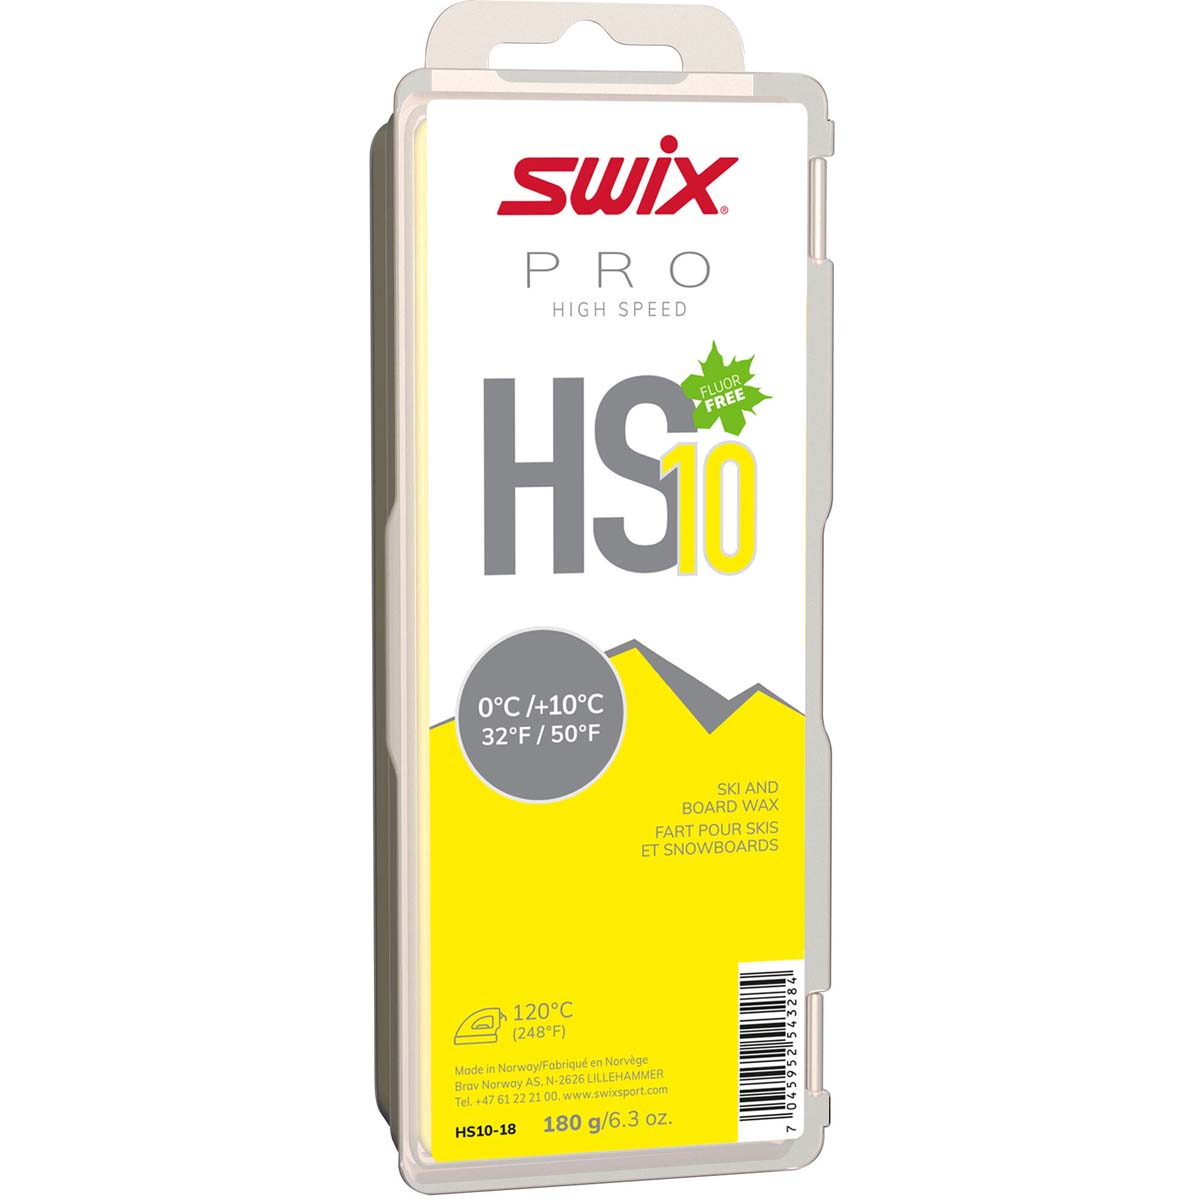 Skluzný vosk Swix High Speed, HS10 žlutý, 0/+10°C,180g